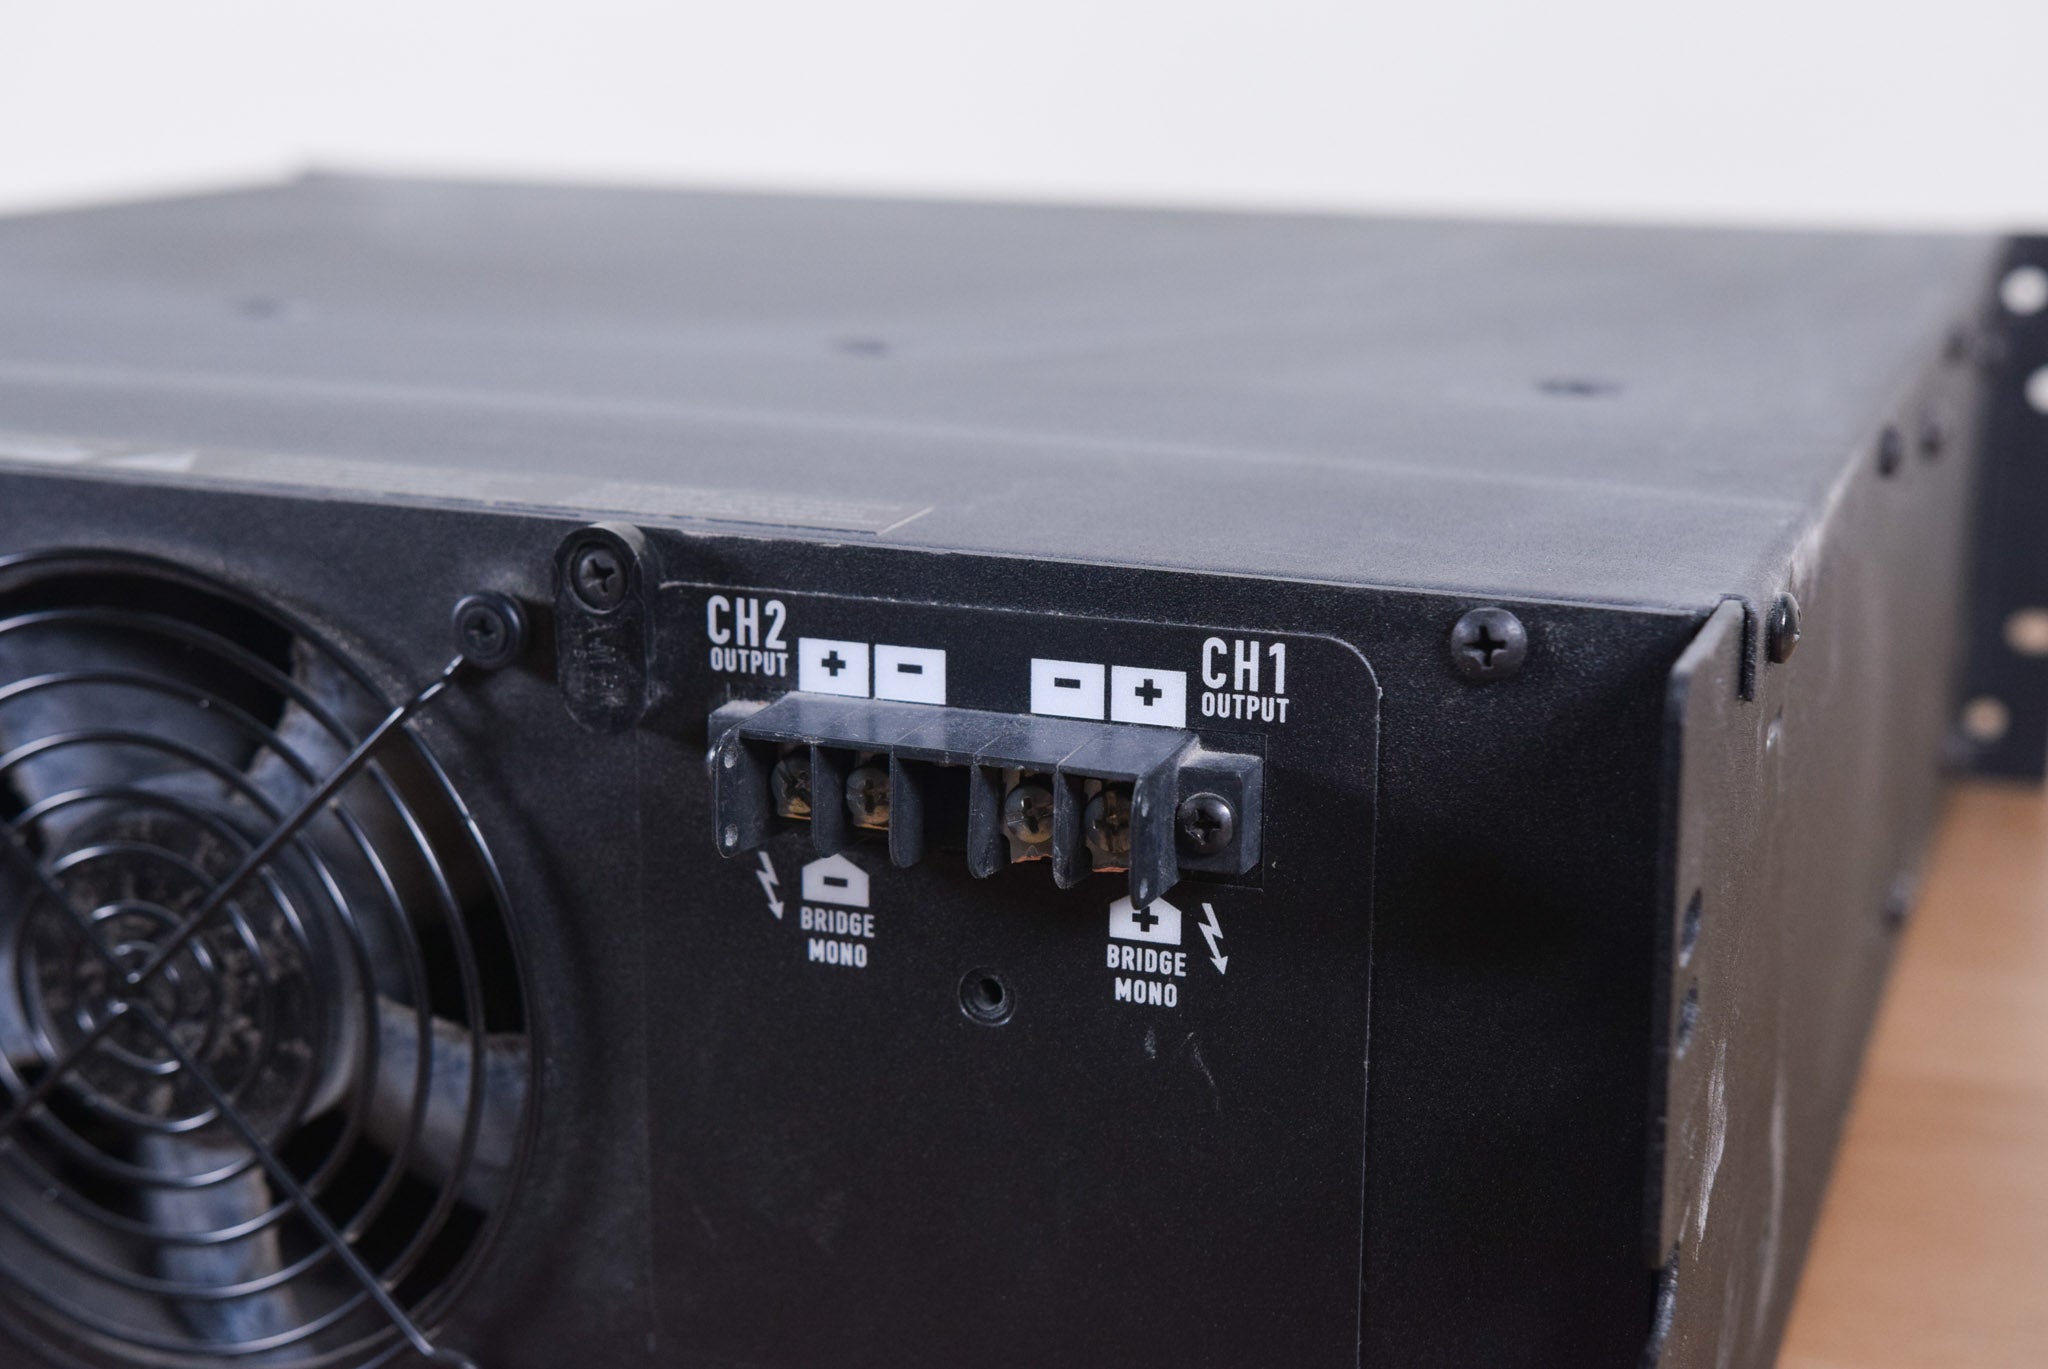 QSC CX12 2-Channel Power Amplifier